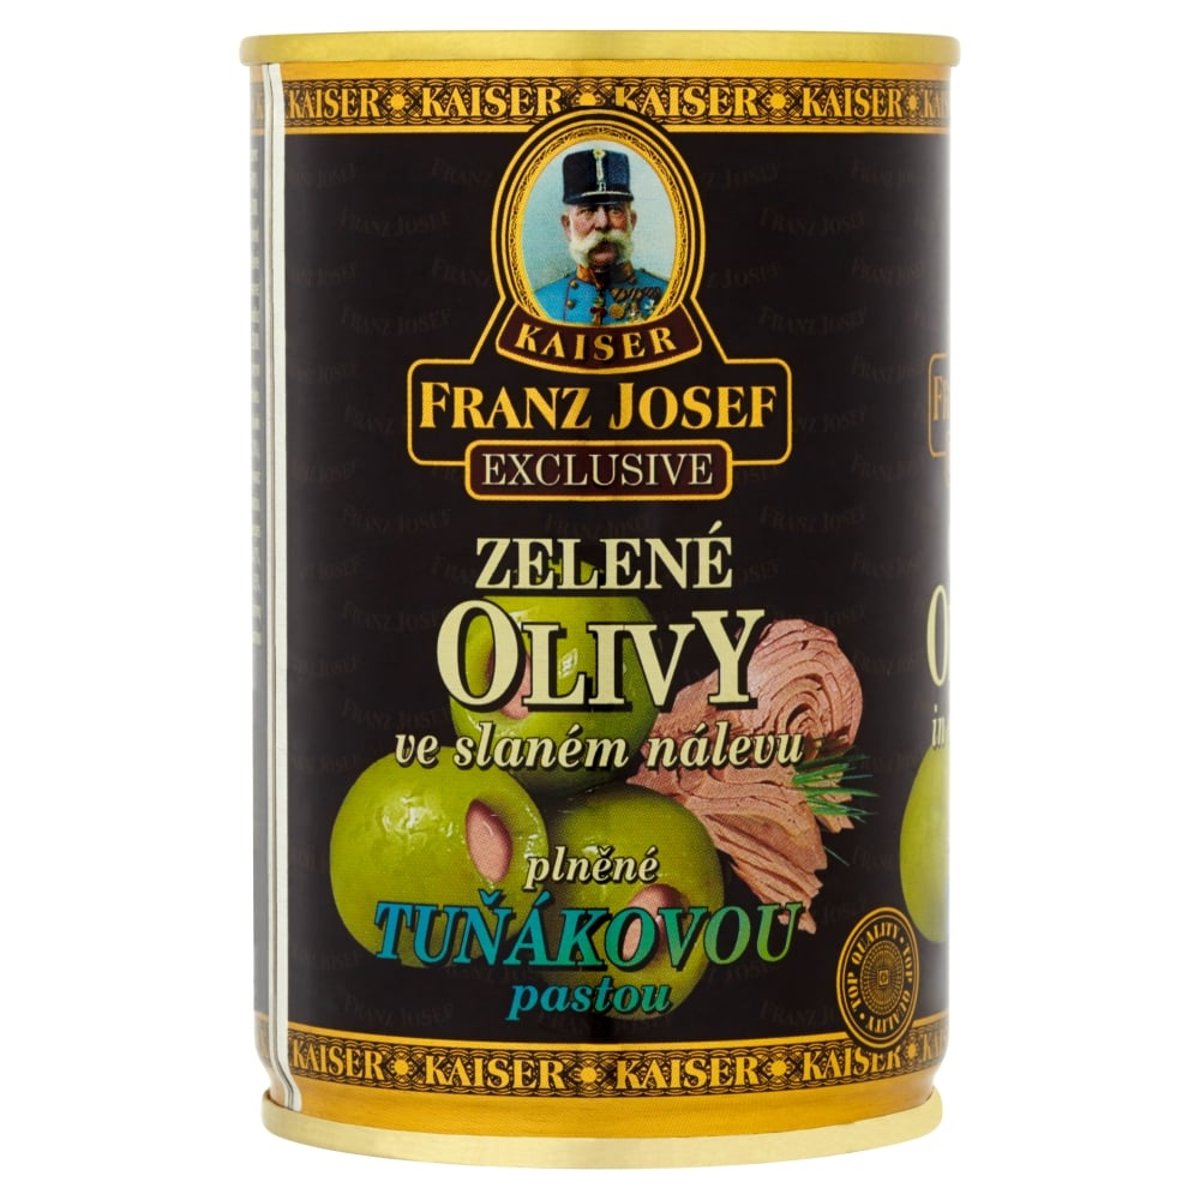 Franz Josef Kaiser Olivy zelené plněné tuňákovou pastou